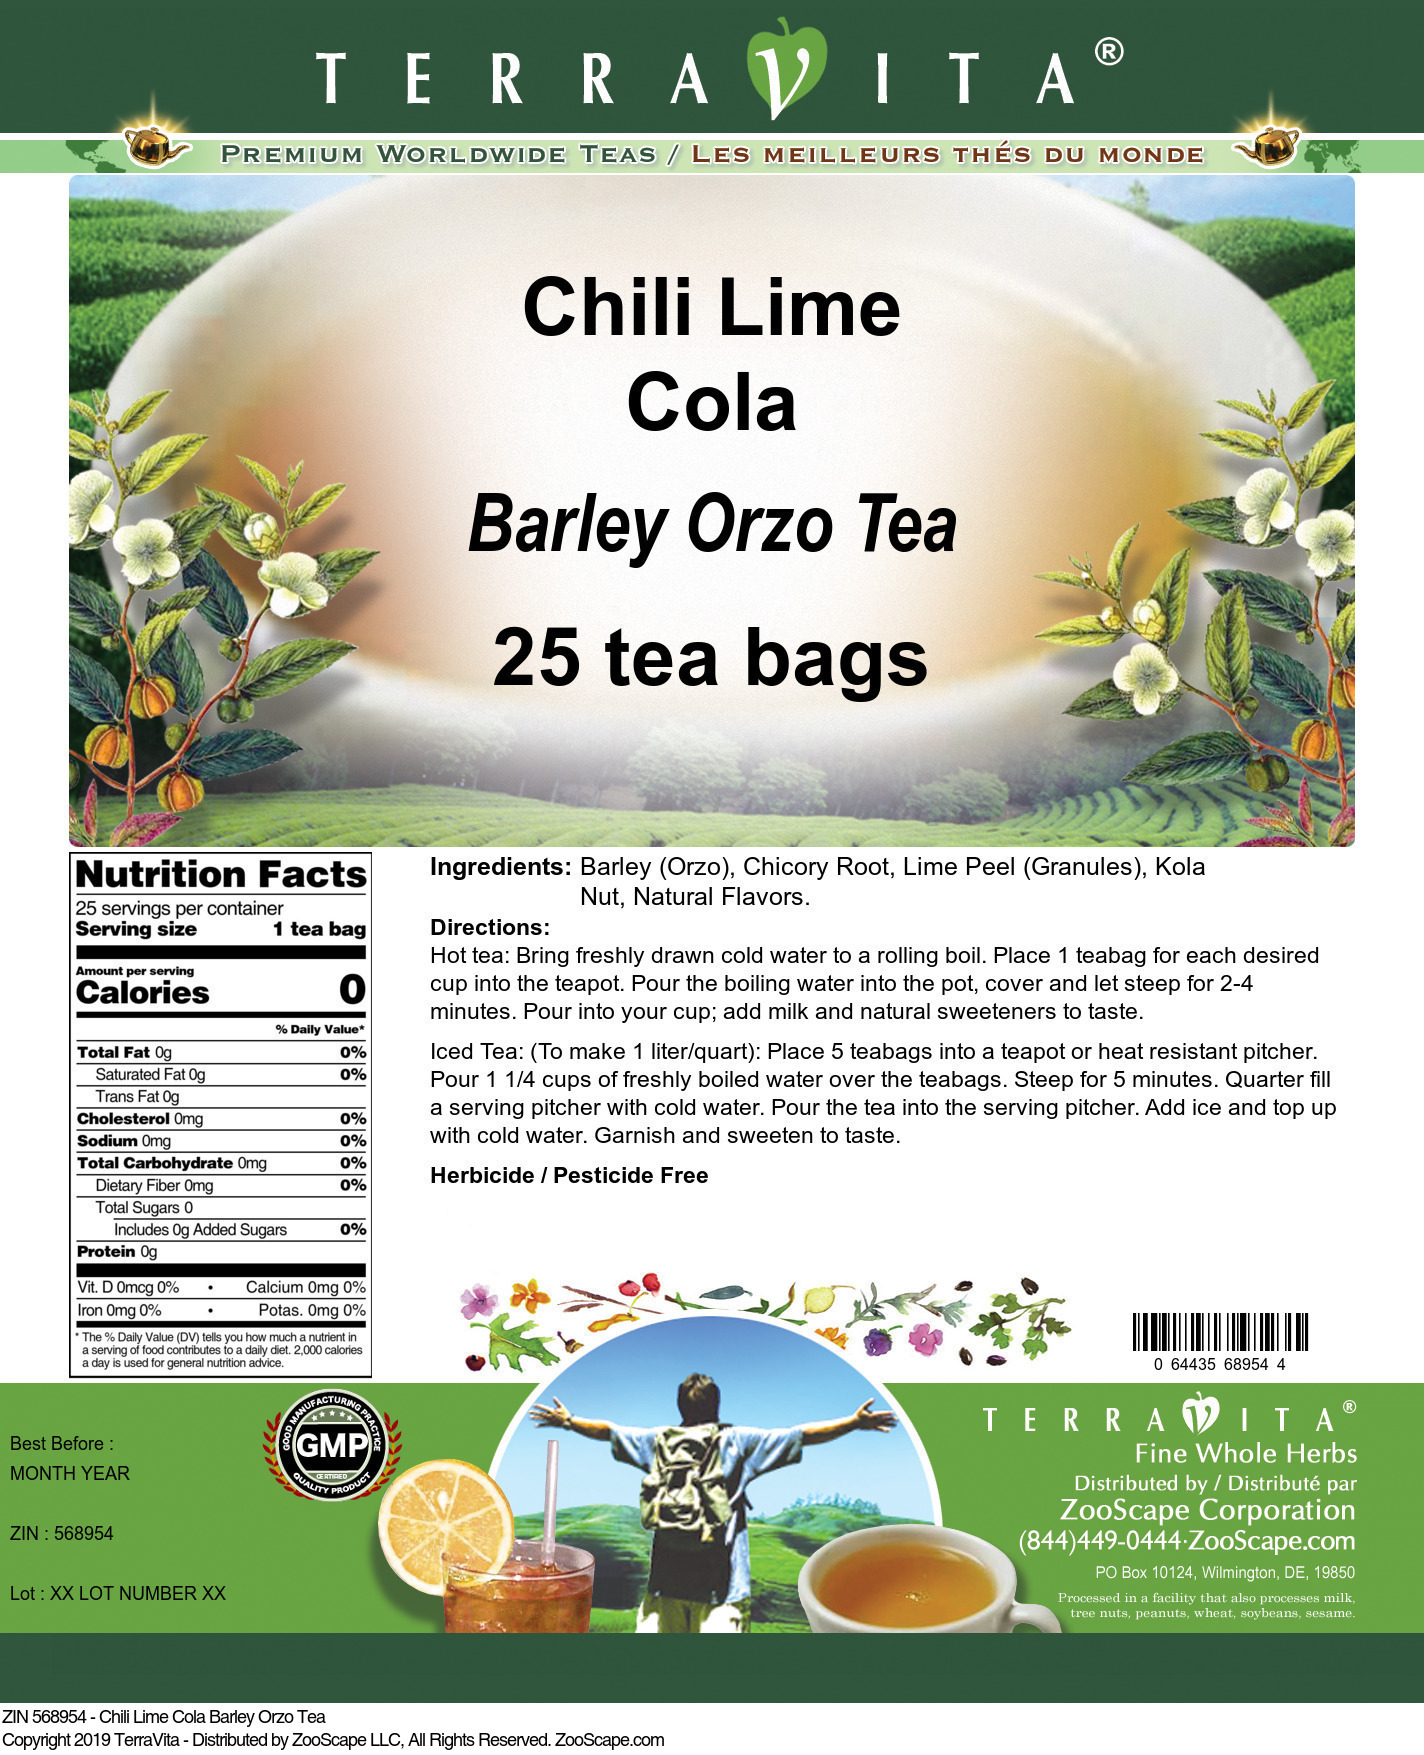 Chili Lime Cola Barley Orzo Tea - Label